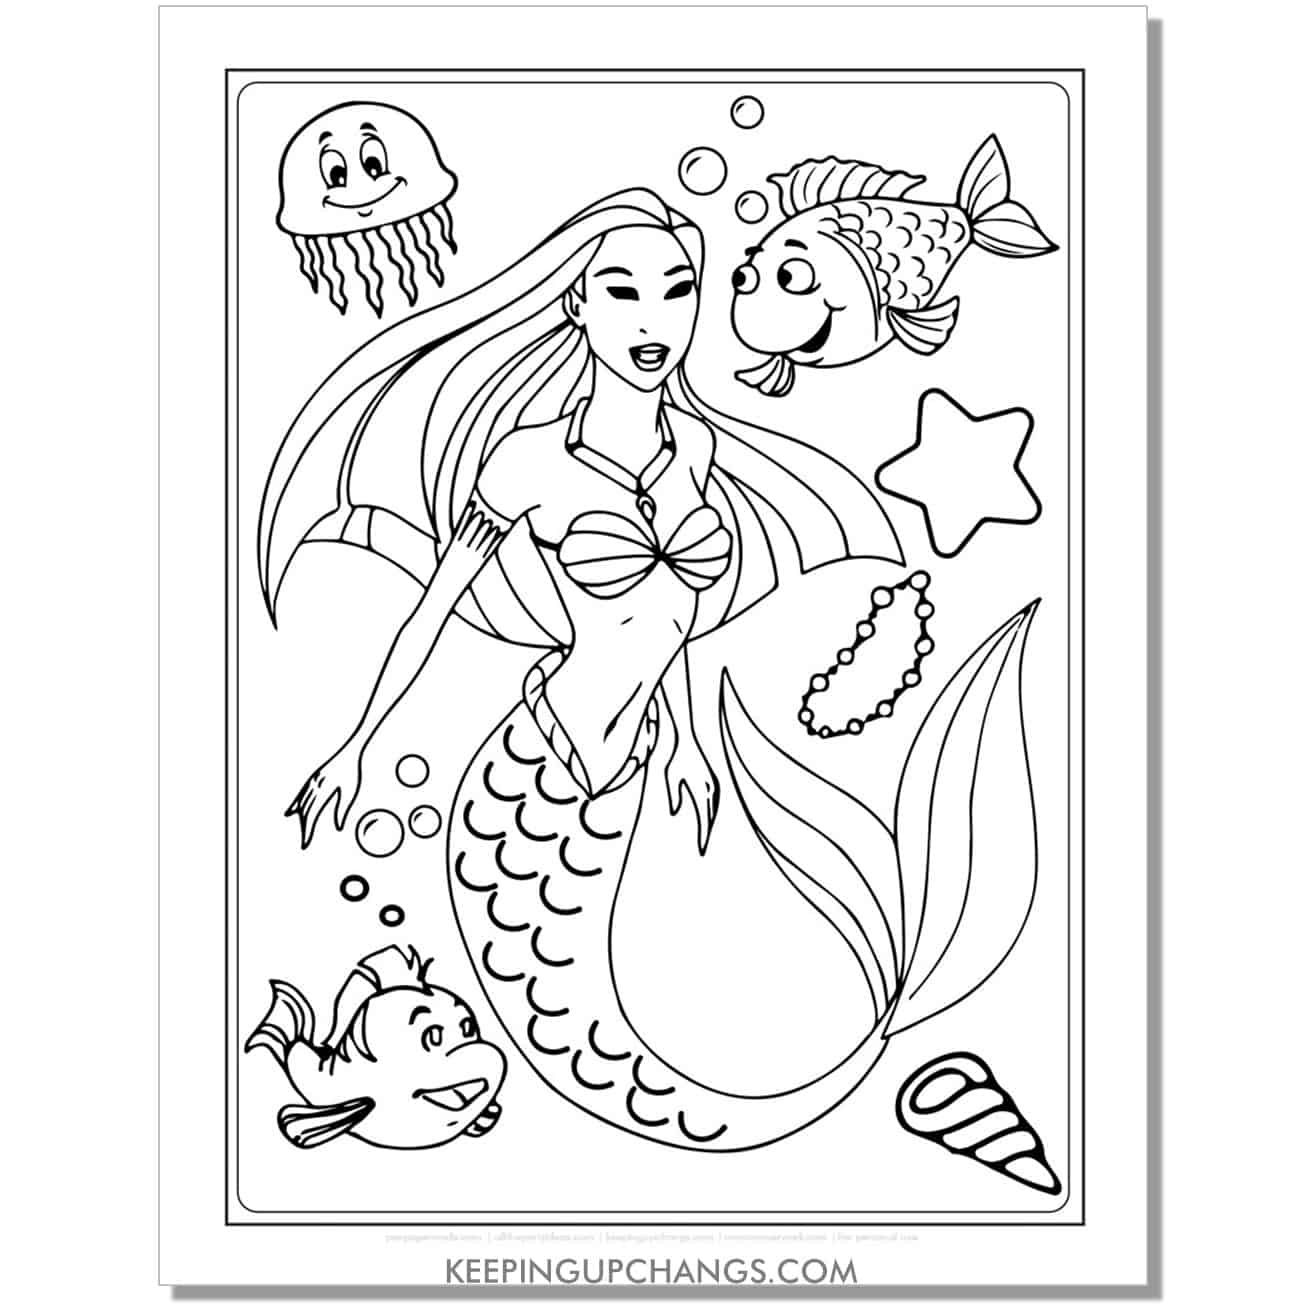 disney princess pocahantas as a mermaid character coloring page.